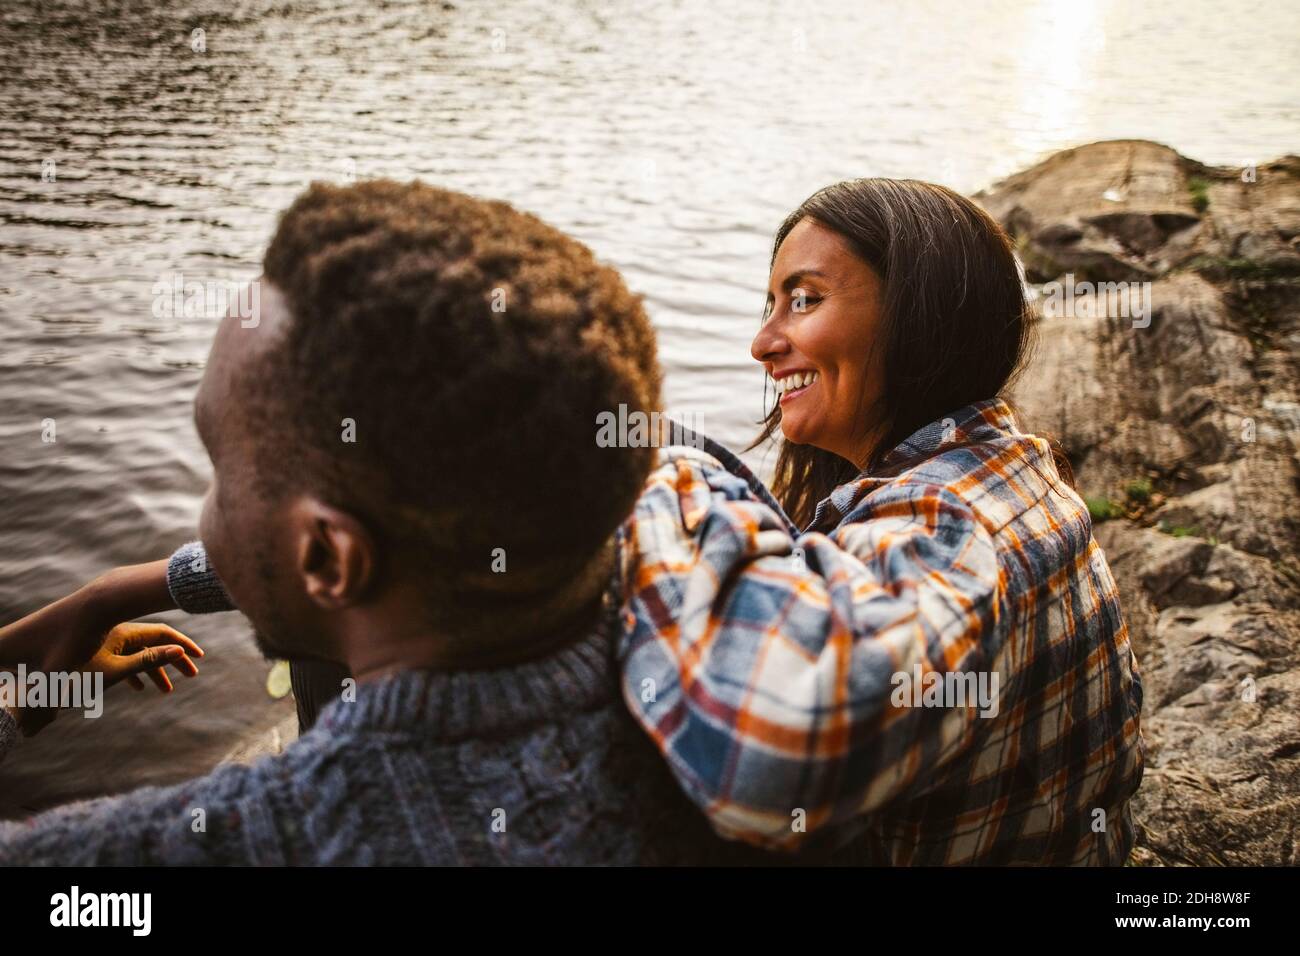 Vista lateral de una mujer sonriente y un hombre sentado junto al lago en el bosque Foto de stock